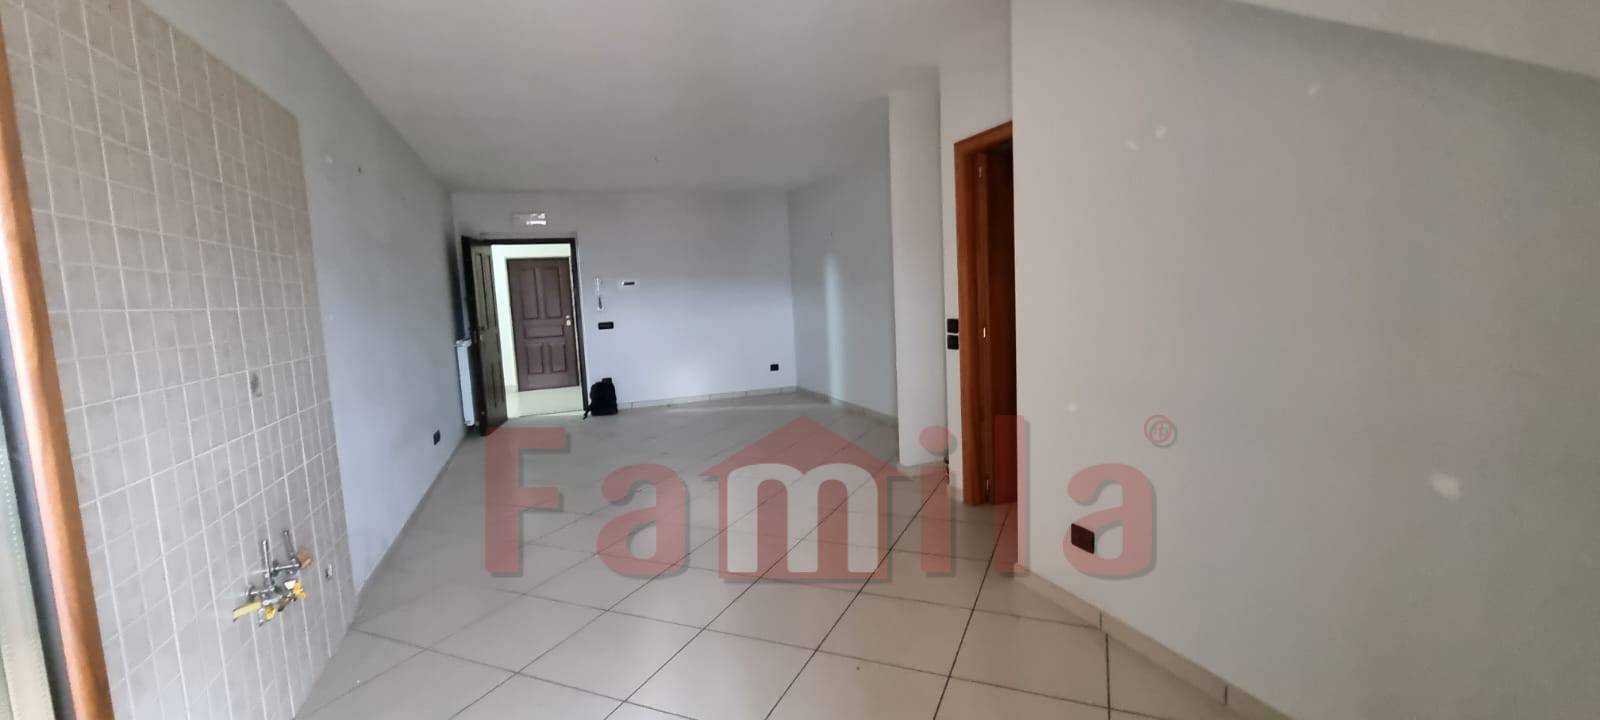 Appartamento in vendita a Sirignano, 3 locali, prezzo € 81.000 | CambioCasa.it